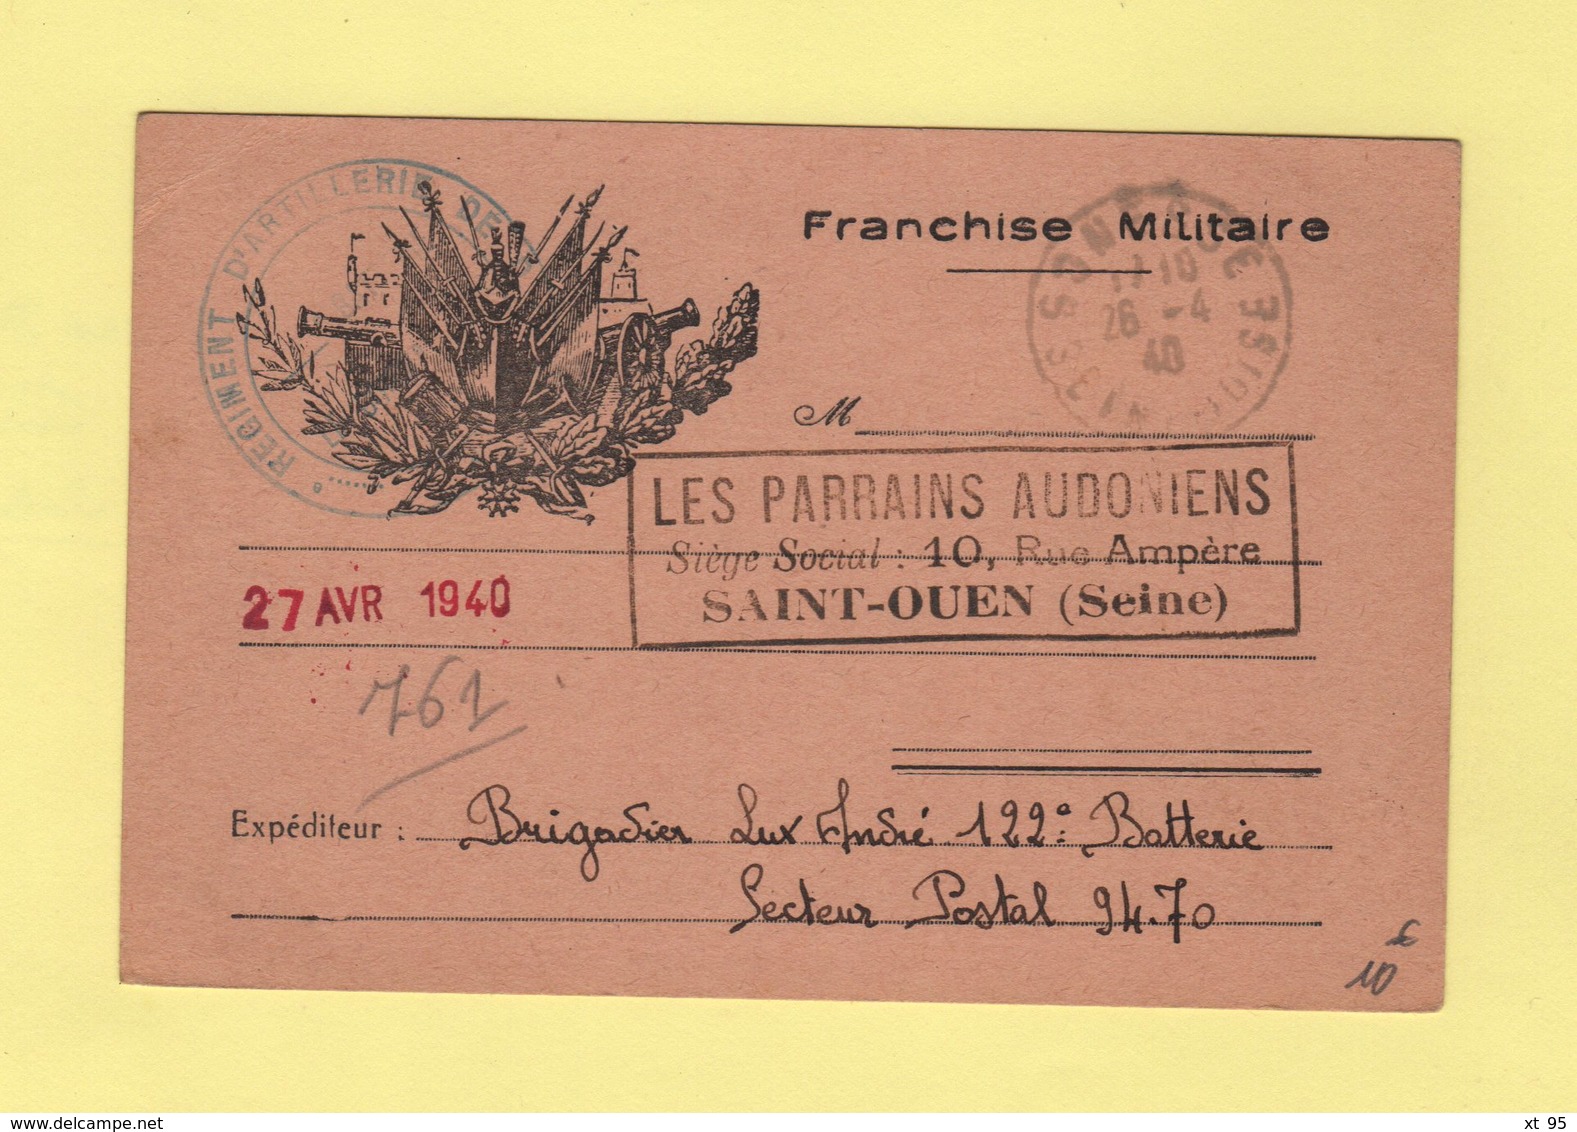 Carte De Franchise Militaire Illustree Adressee Aux Parrains Audoniens De Saint Ouen  - Gonesse Seine Et Oise 26-4-1940 - Guerre De 1939-45